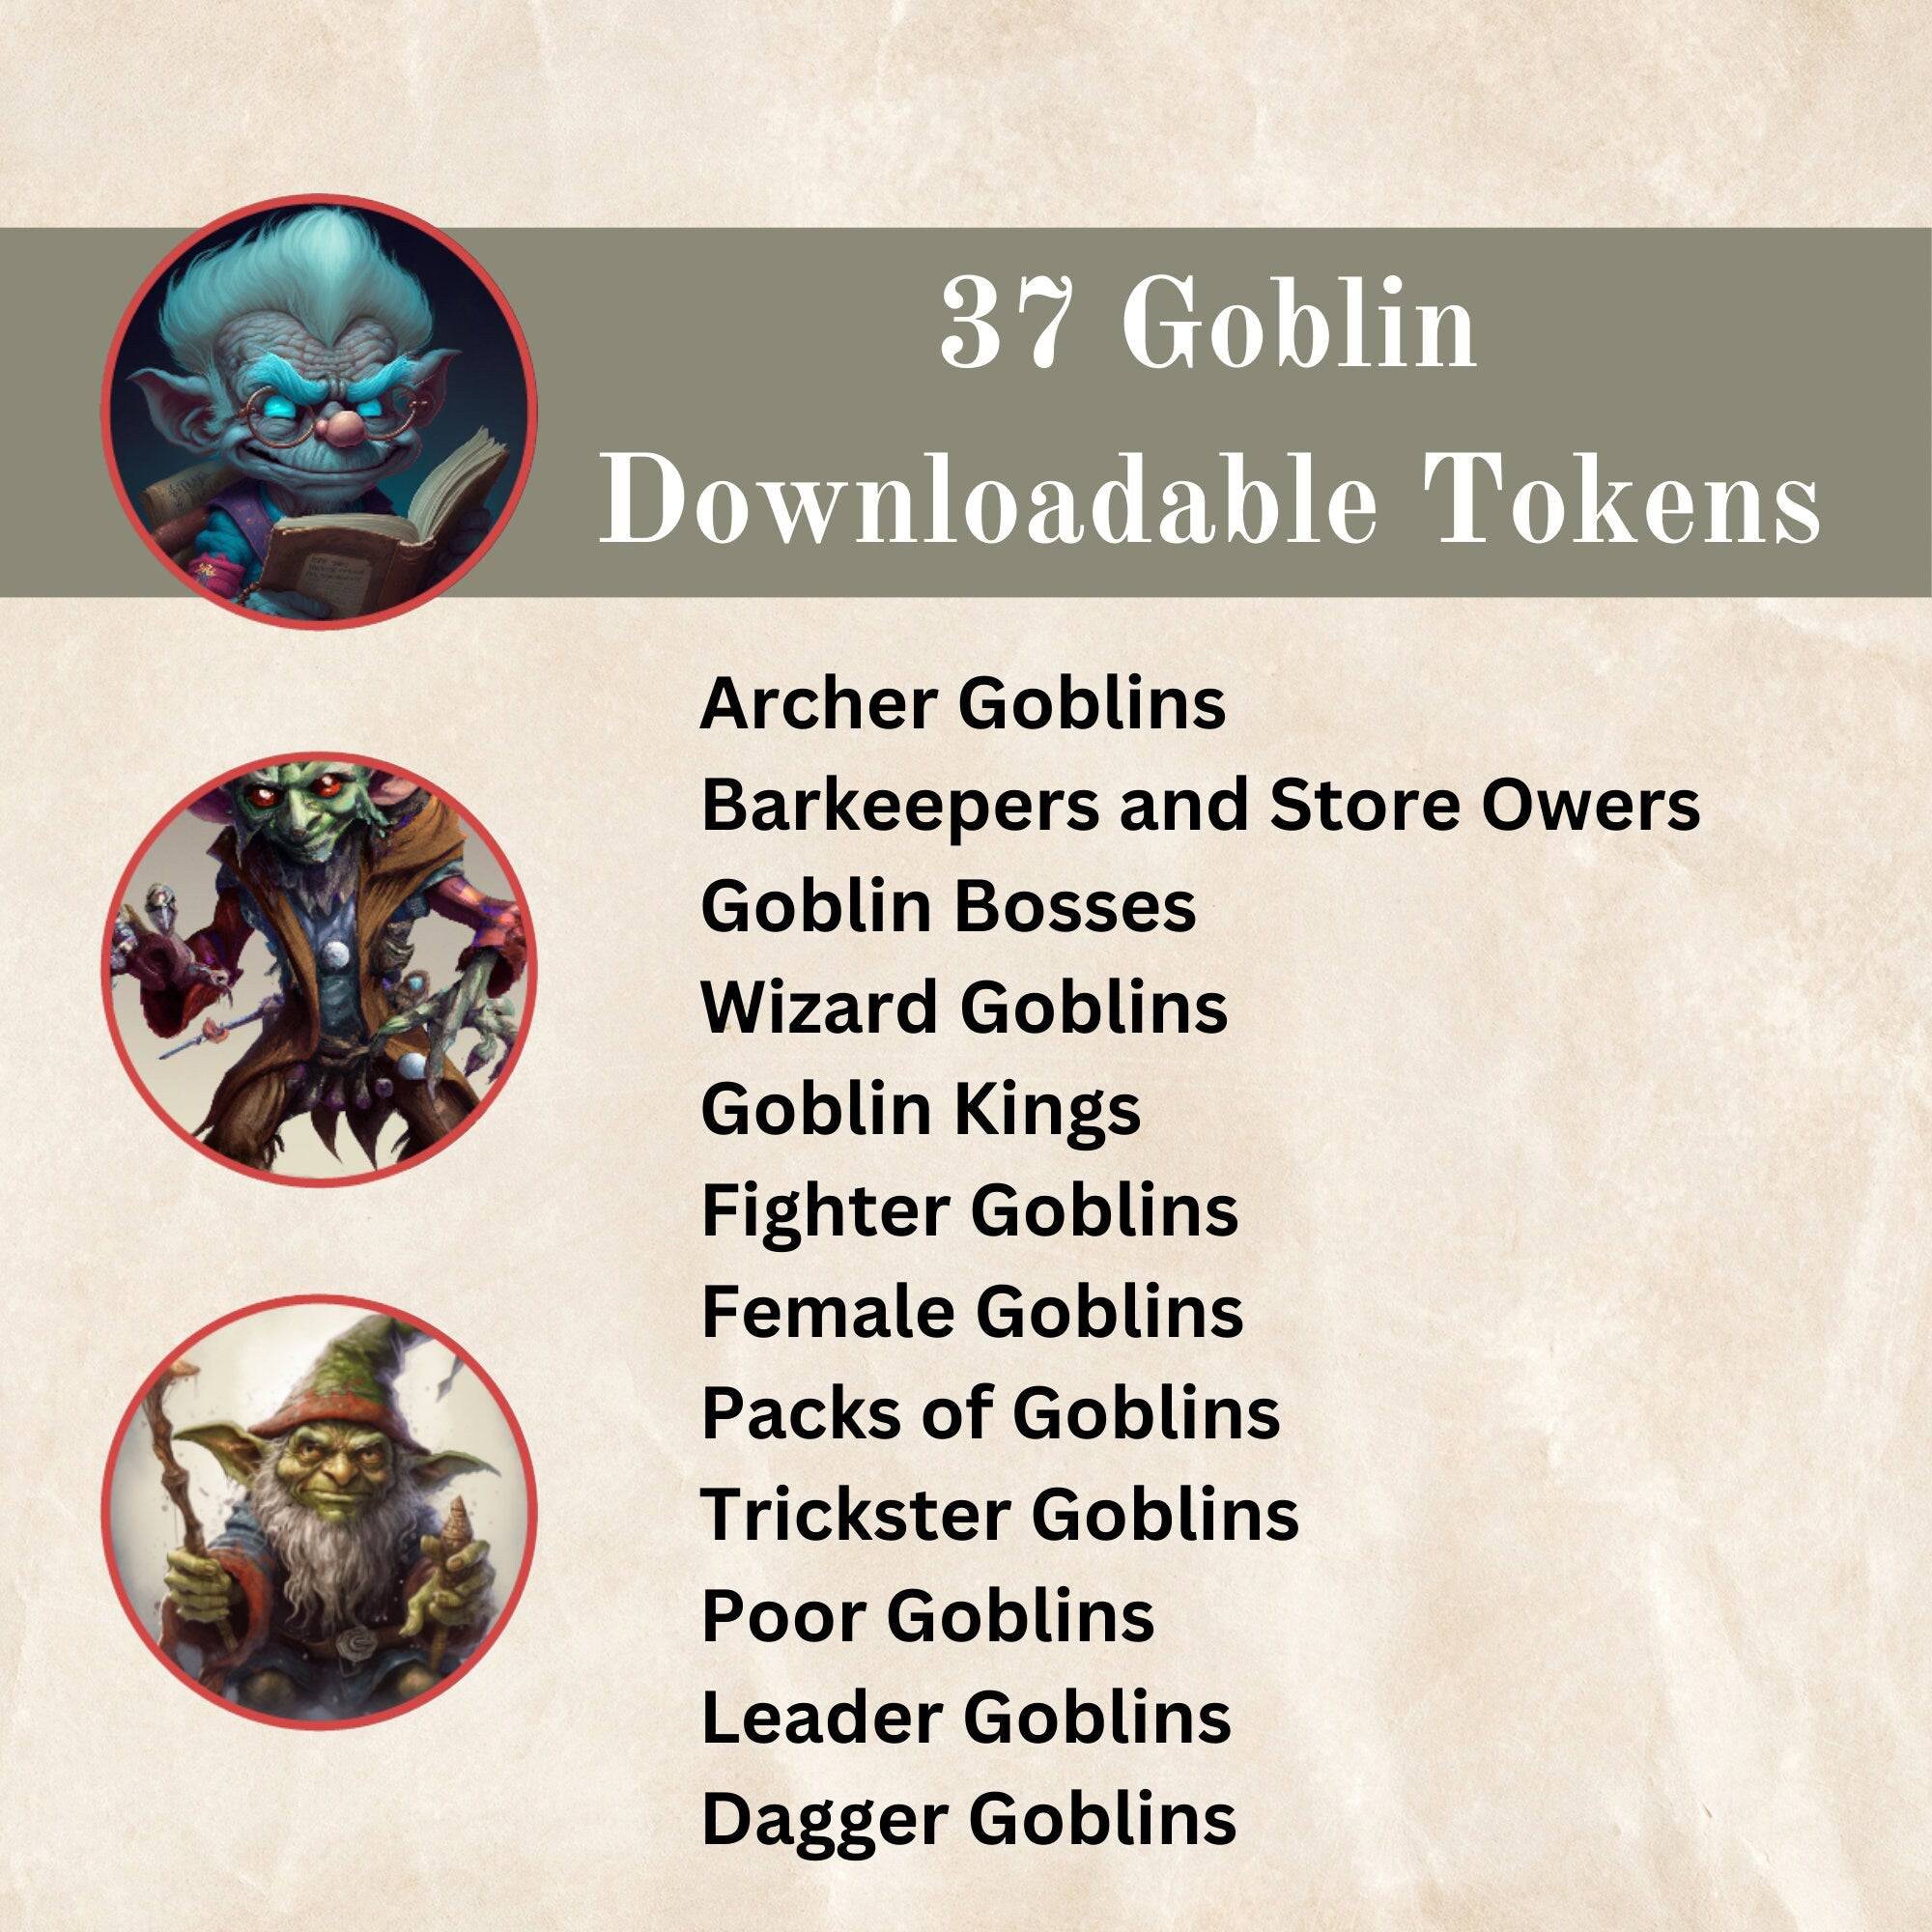 37 DnD Goblin Token 5e - Mystery Dice Goblin